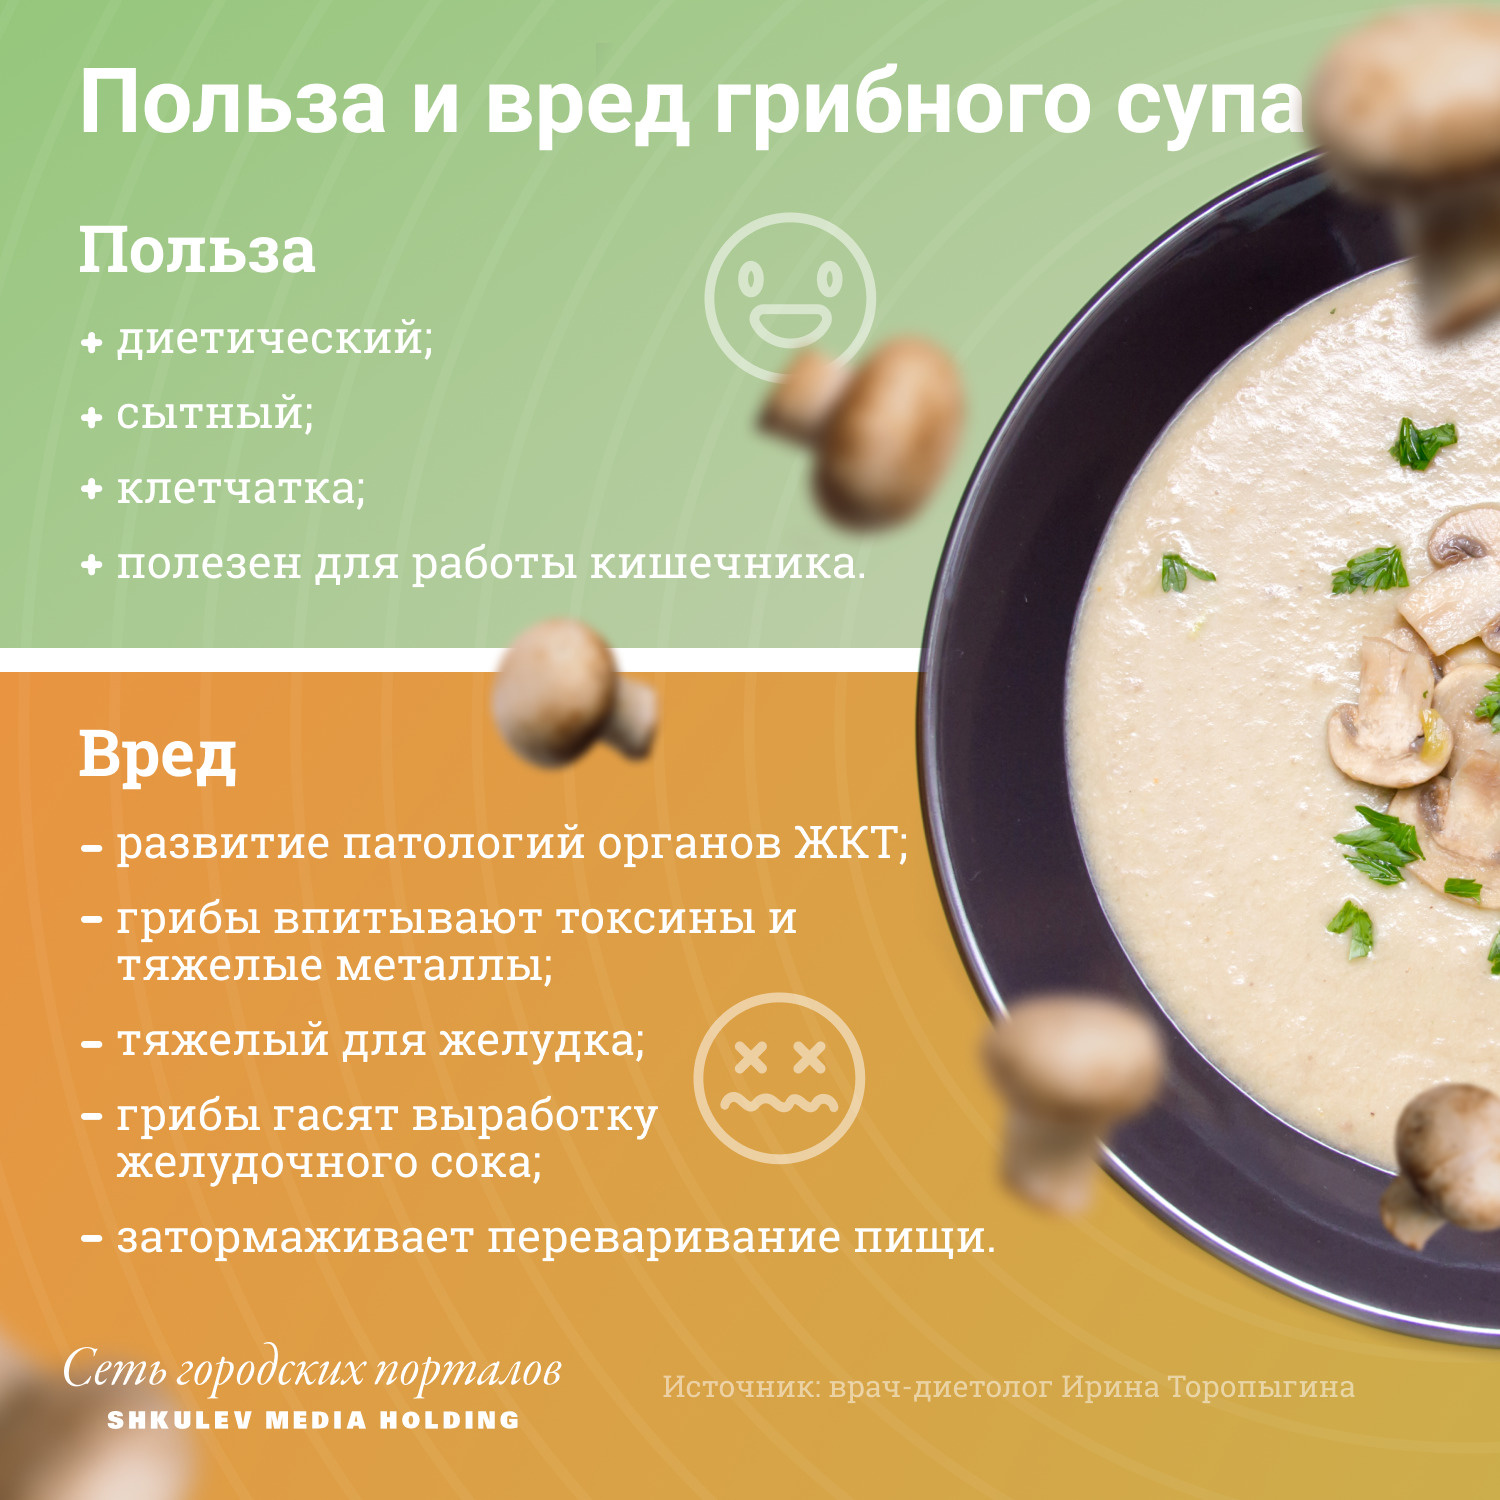 Суп-пюре из грибов: рецепты и полезные свойства